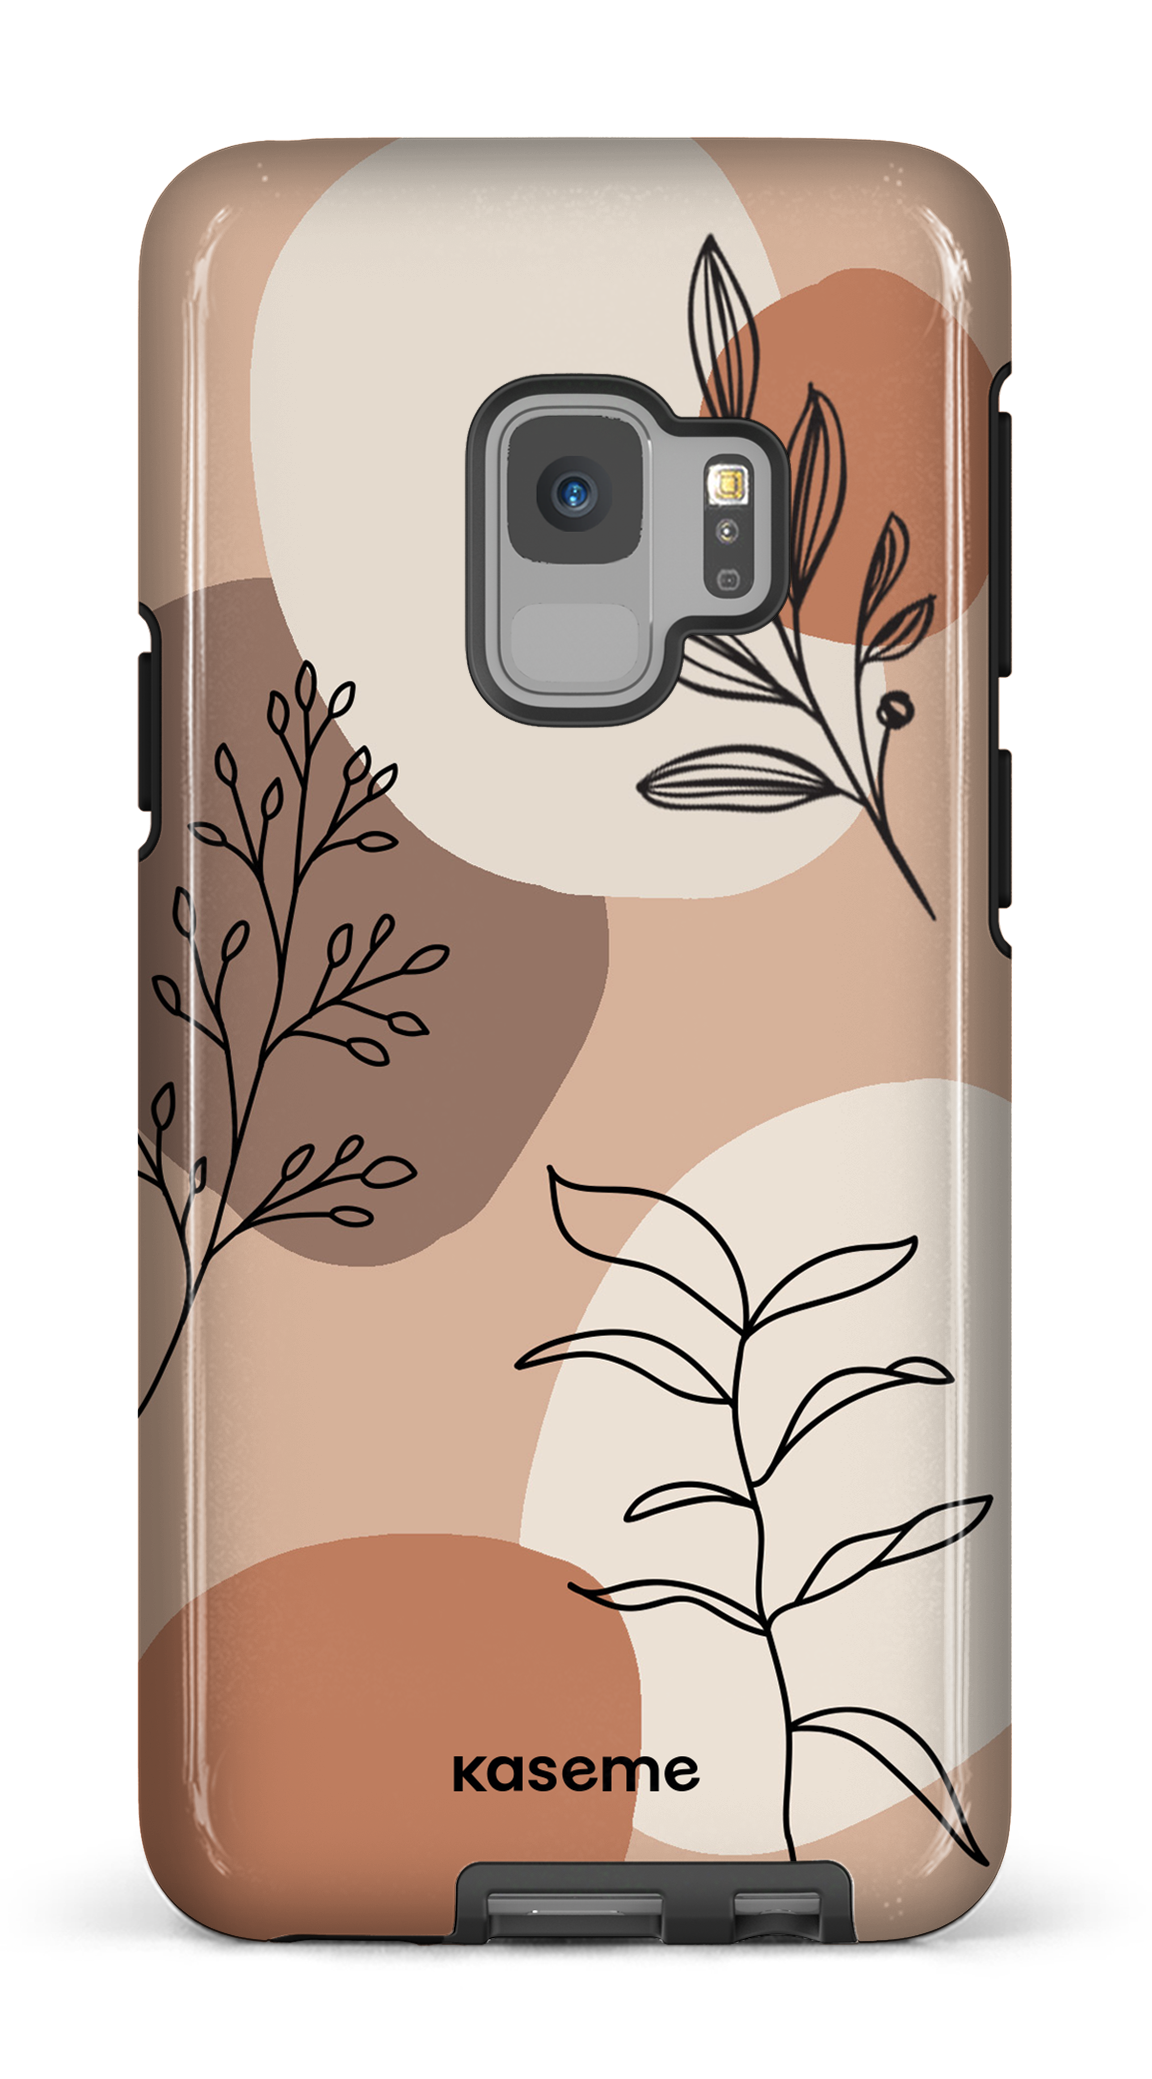 Almond - Galaxy S9